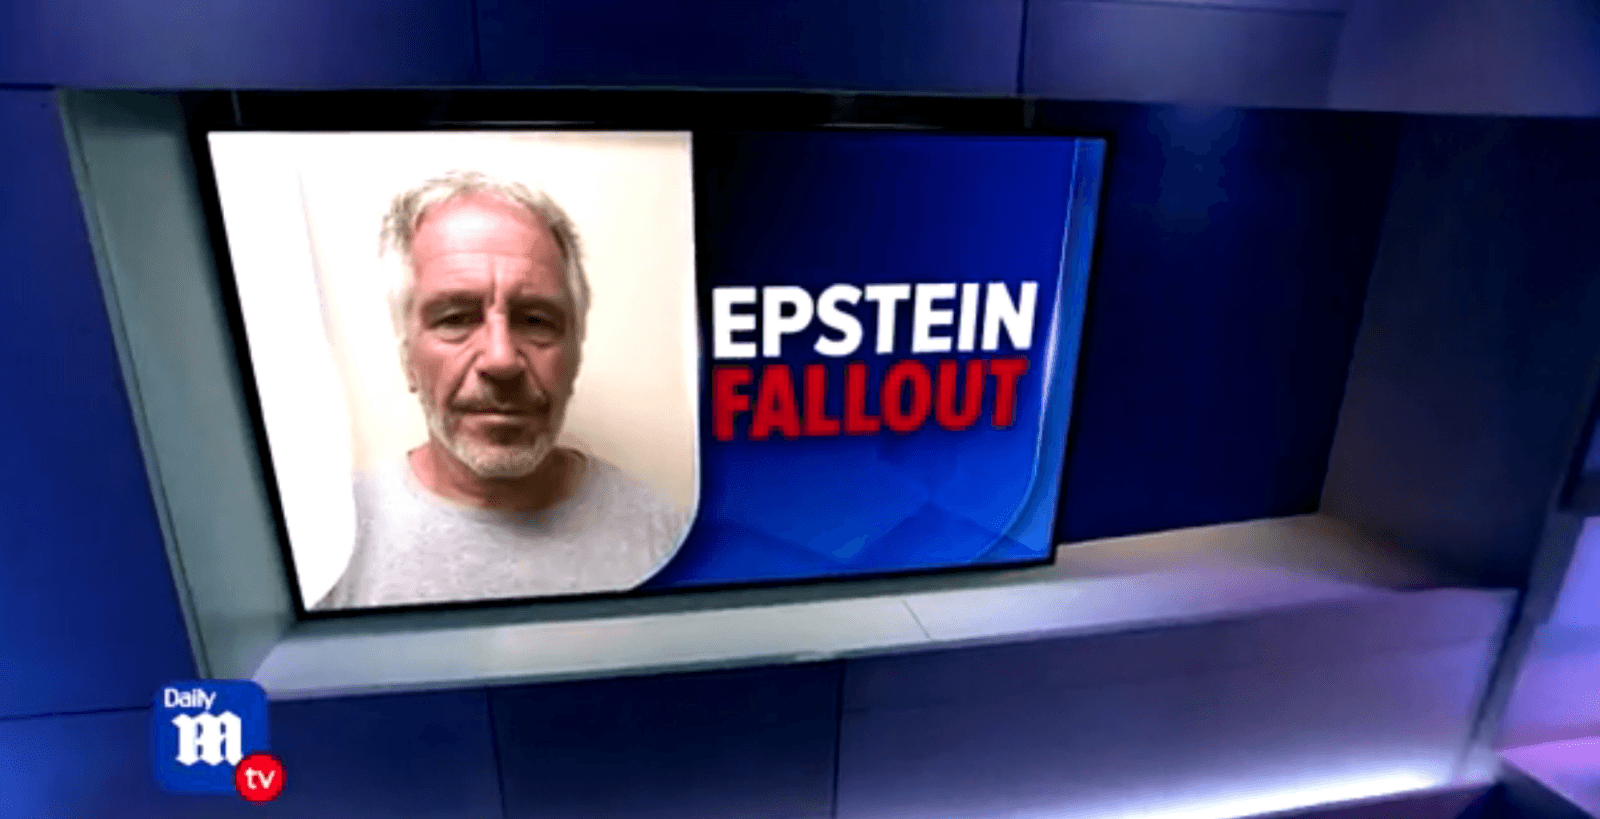 Epstein-slachtoffer beschuldigt Prins Andrew van misbruik desondanks GEEN nieuw onderzoek